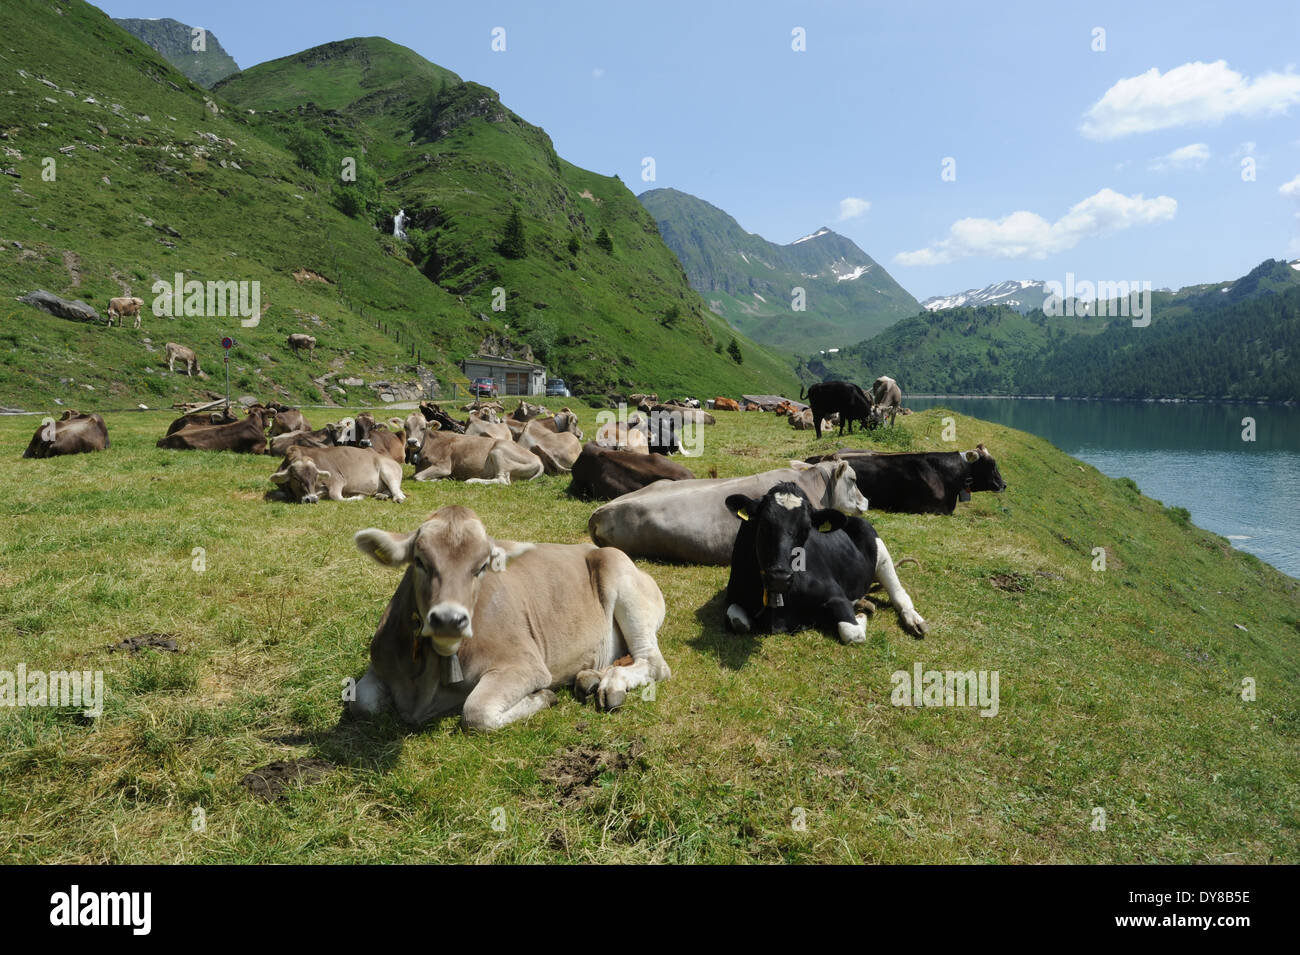 Switzerland, Ticino, Ritom, Piora, lake, cows, lie Stock Photo